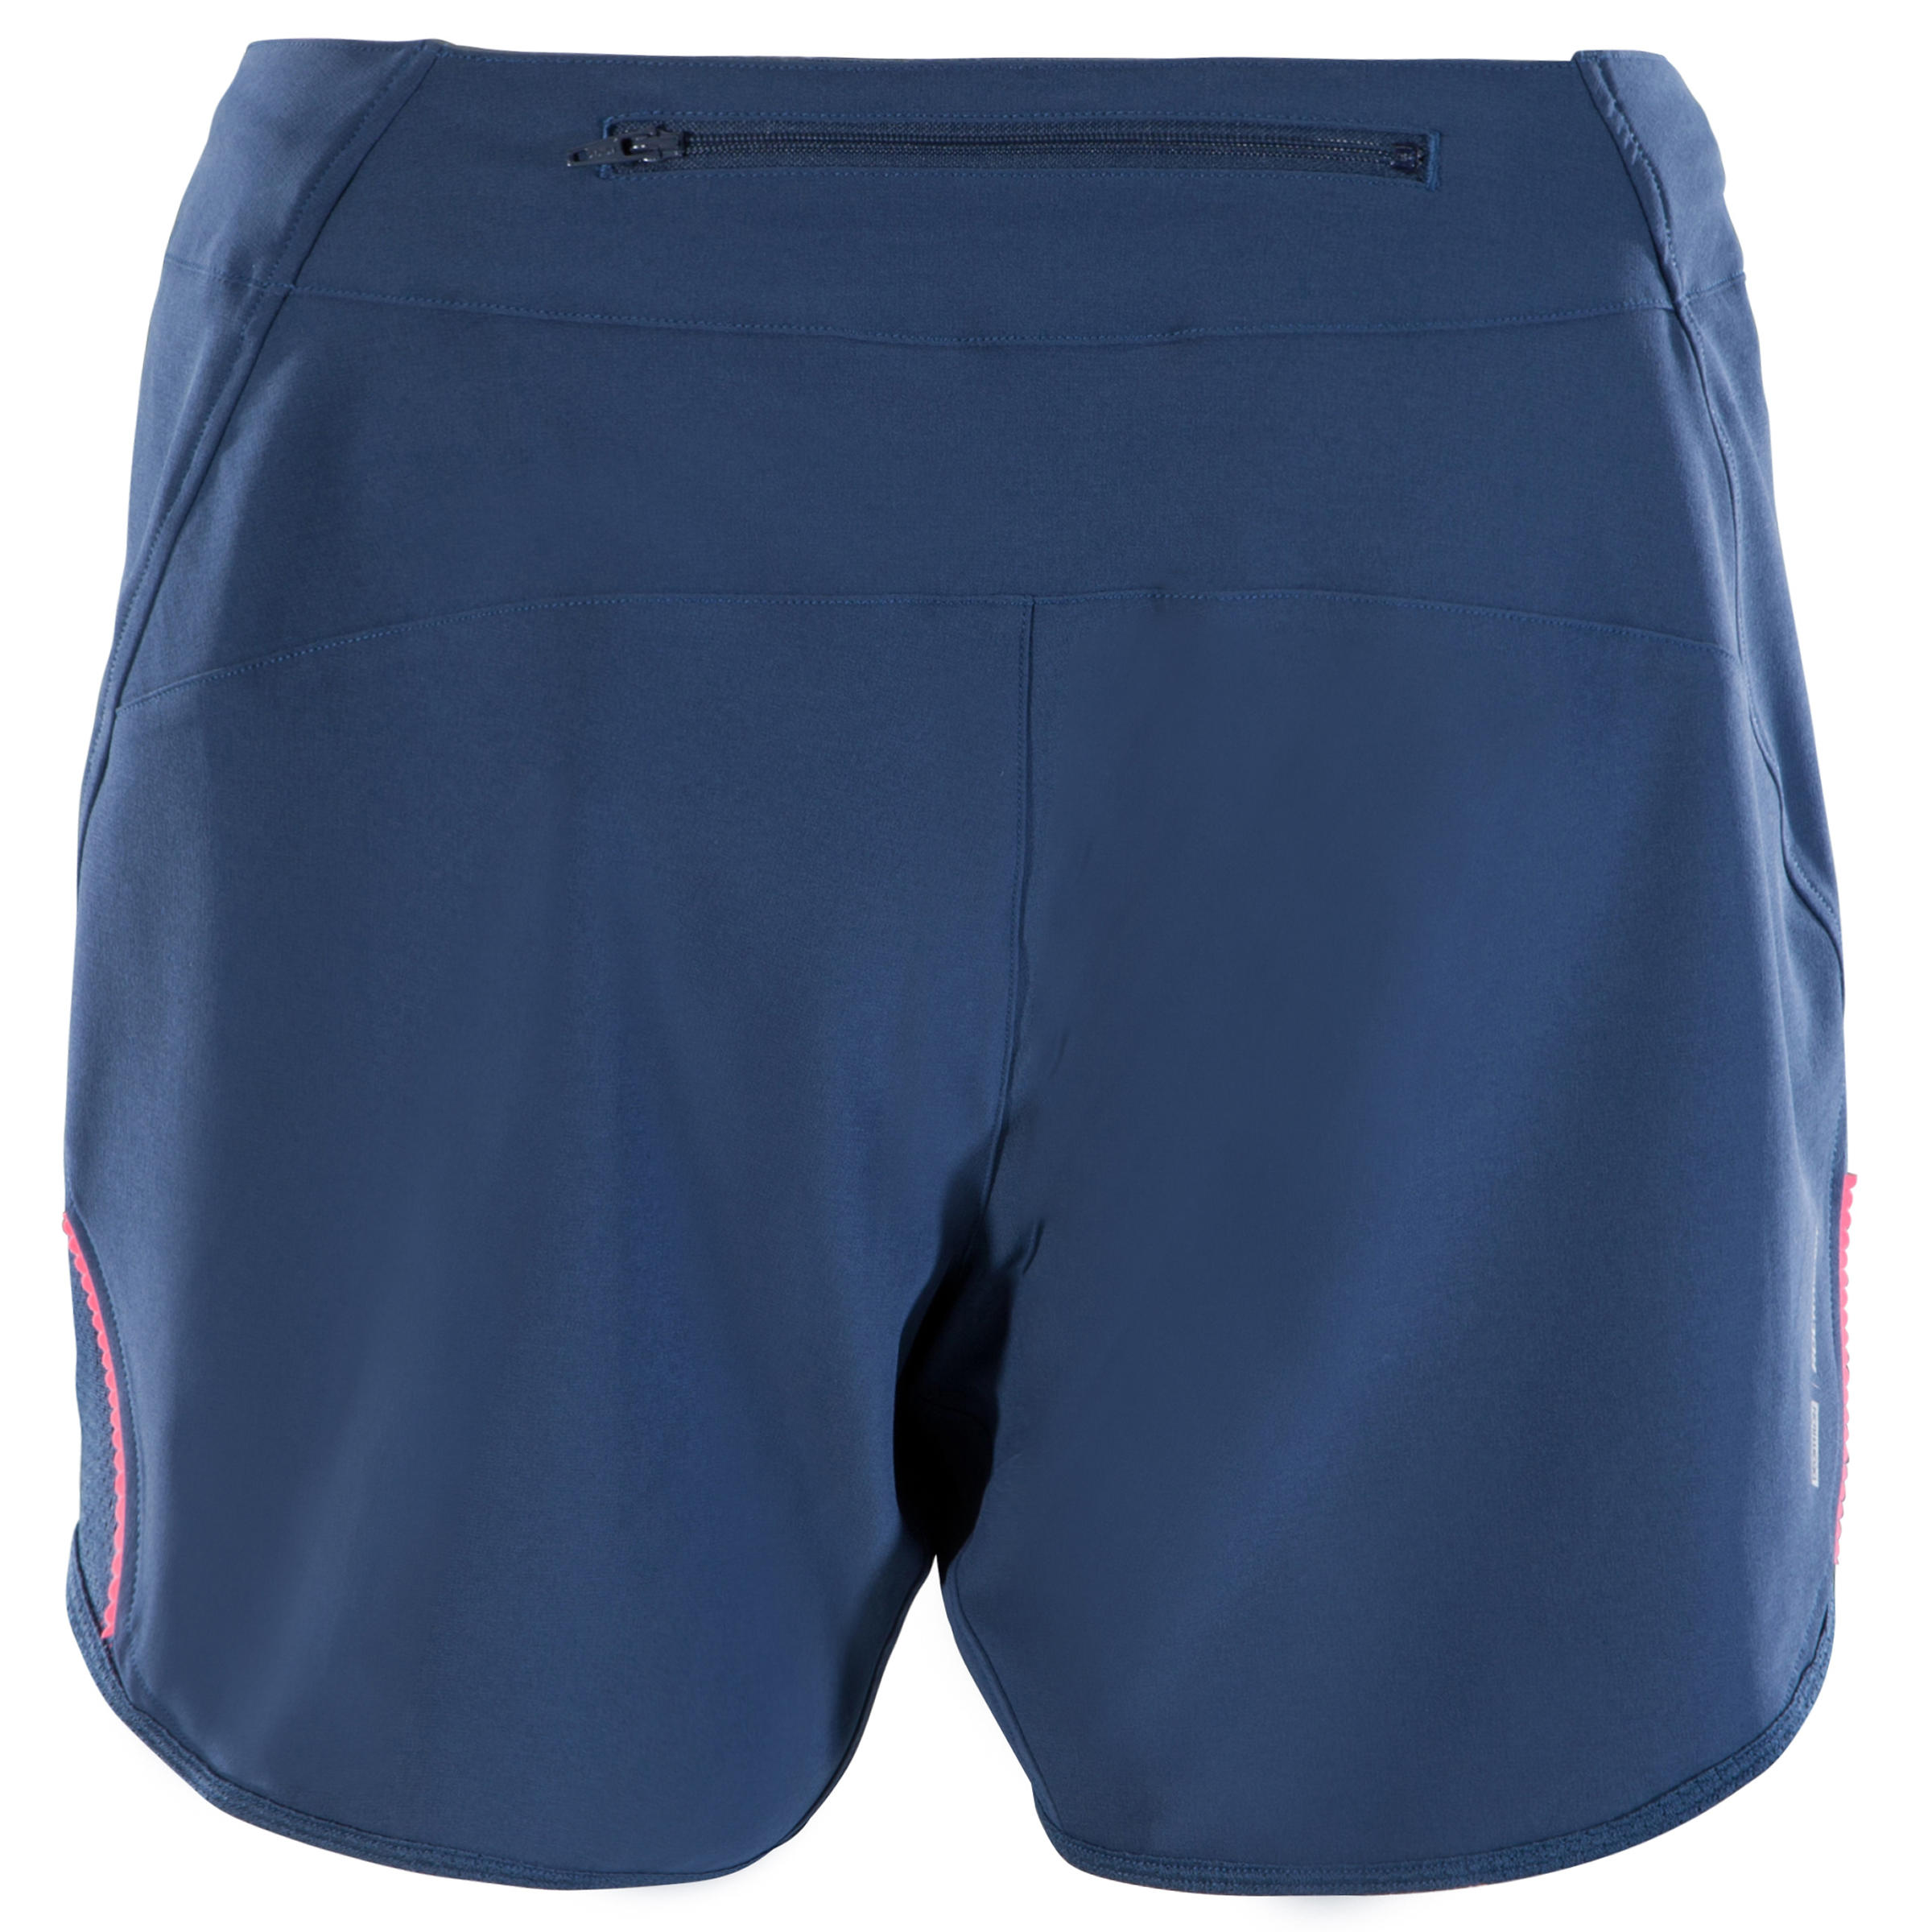 ST 500 Women's Mountain Biking Shorts - Blue 4/6